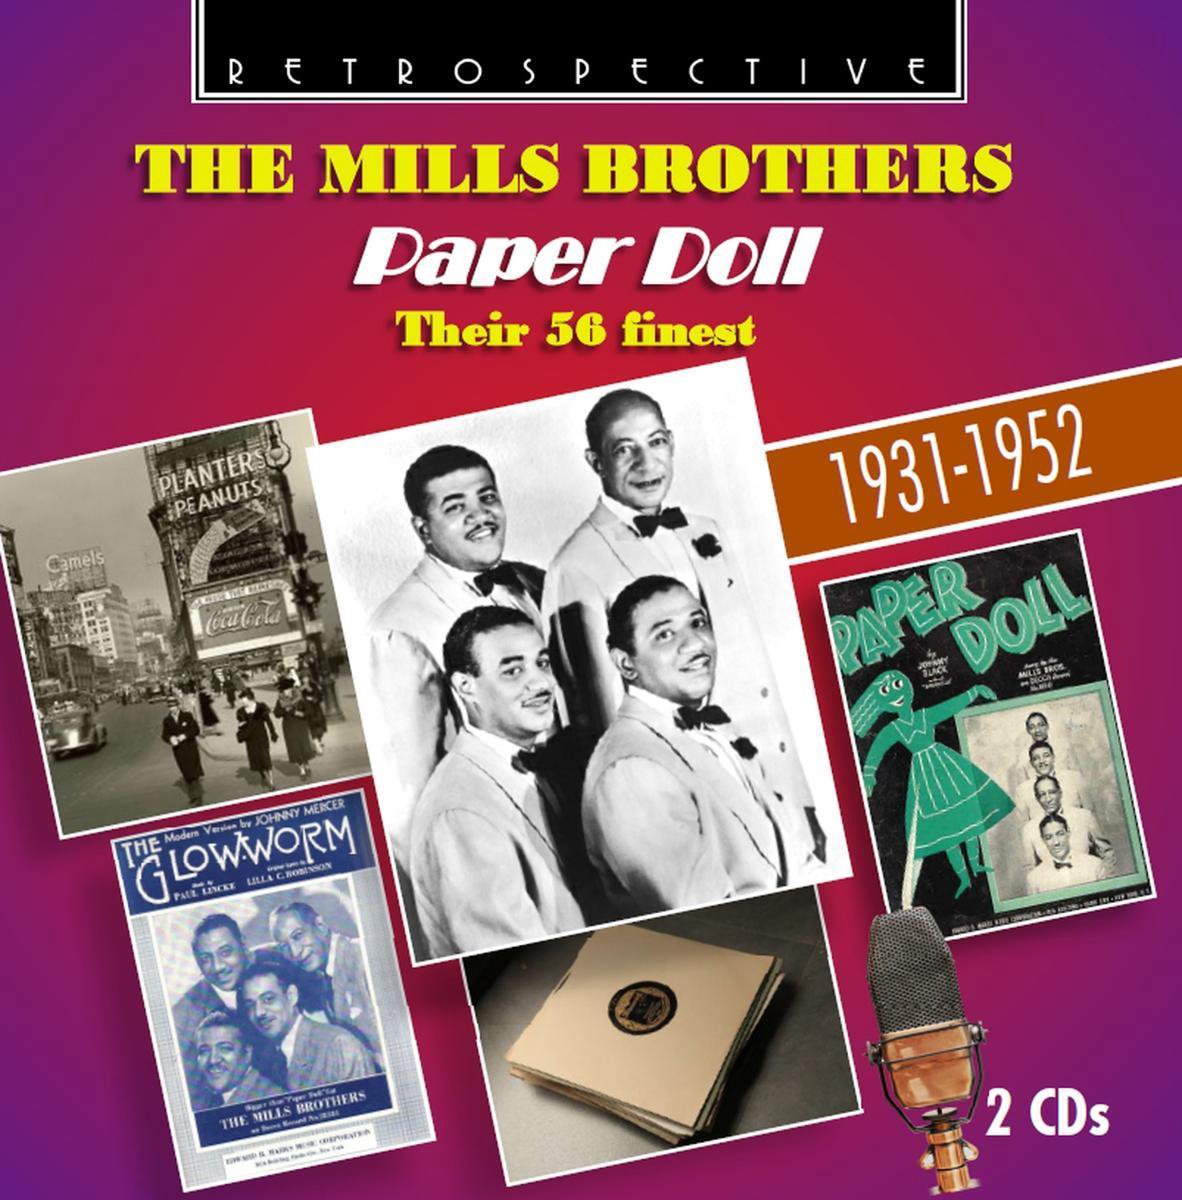 paper doll mills